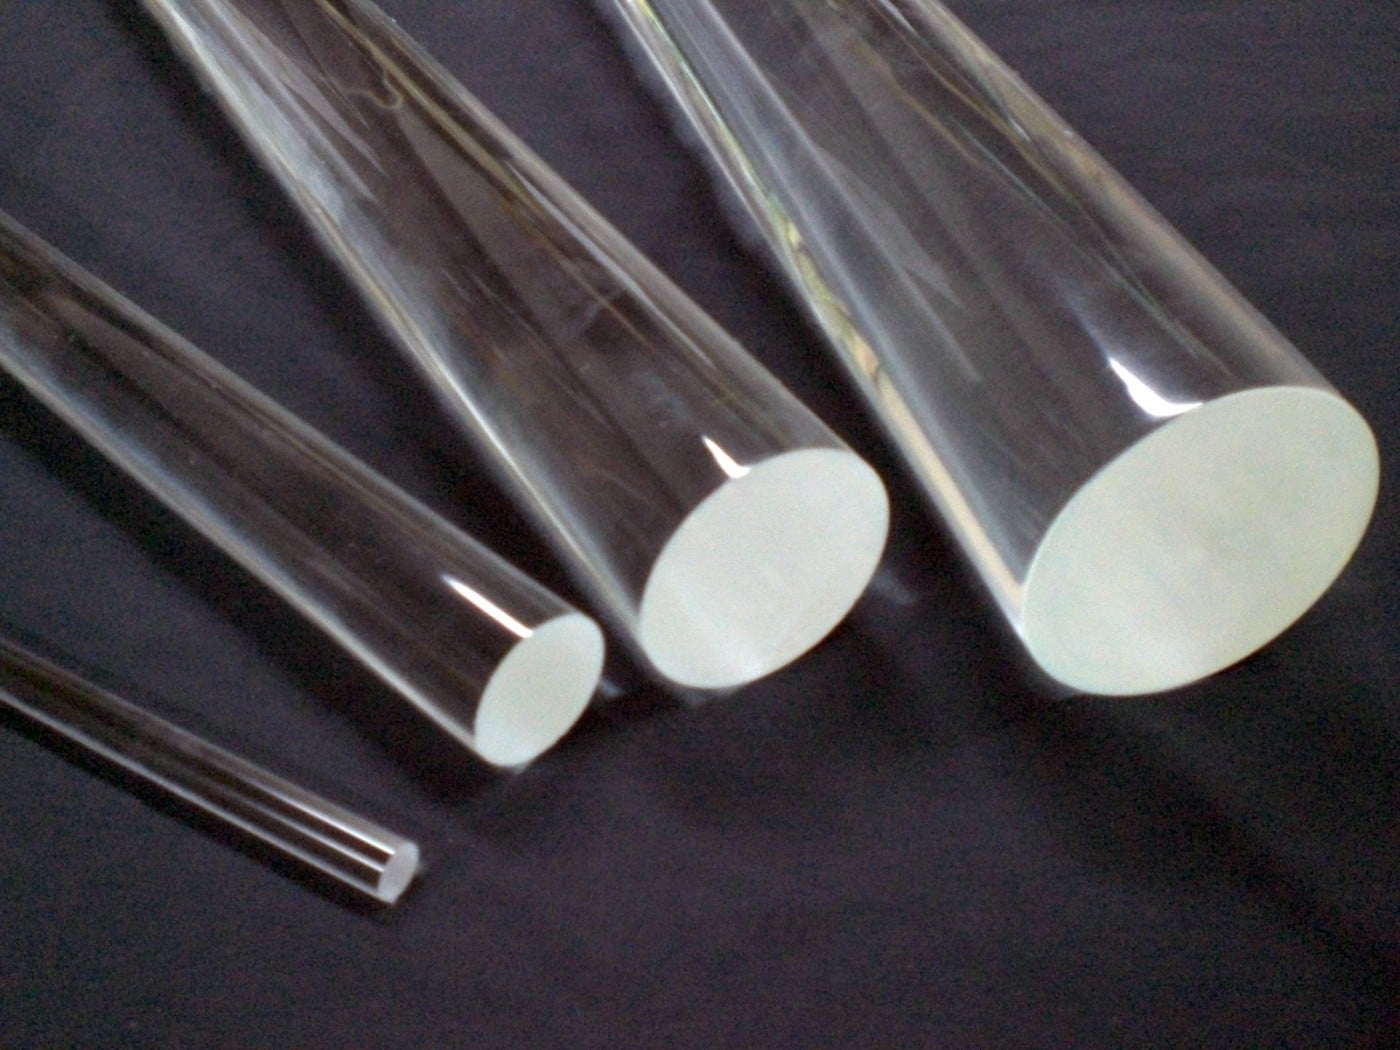 アクリル棒 丸棒 70mm 透明 クリア プラスチック 樹脂 キャスト材料『アクリル丸棒 外径70mm長さ1m(素材のまま)』 - 2